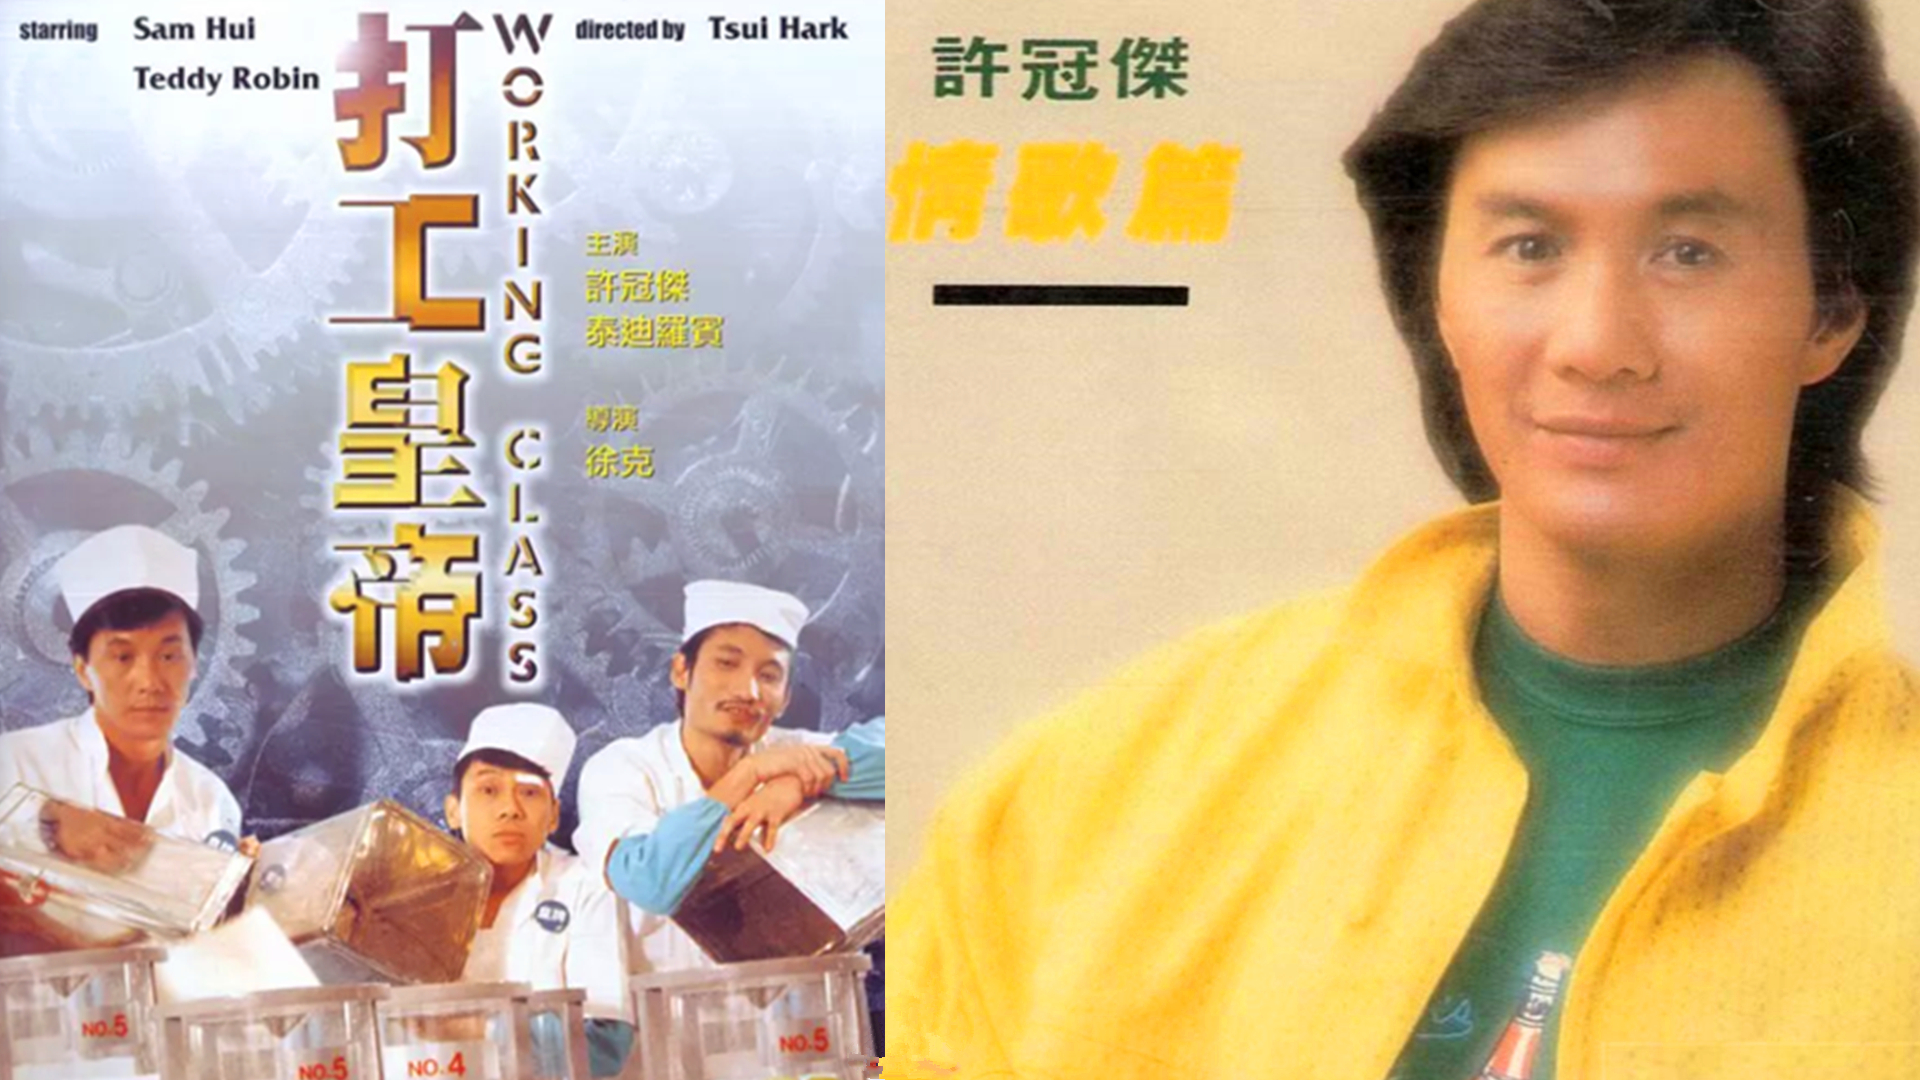 1985年,许冠杰与王祖贤,泰迪罗宾共同主演喜剧电影《打工皇帝》,这部